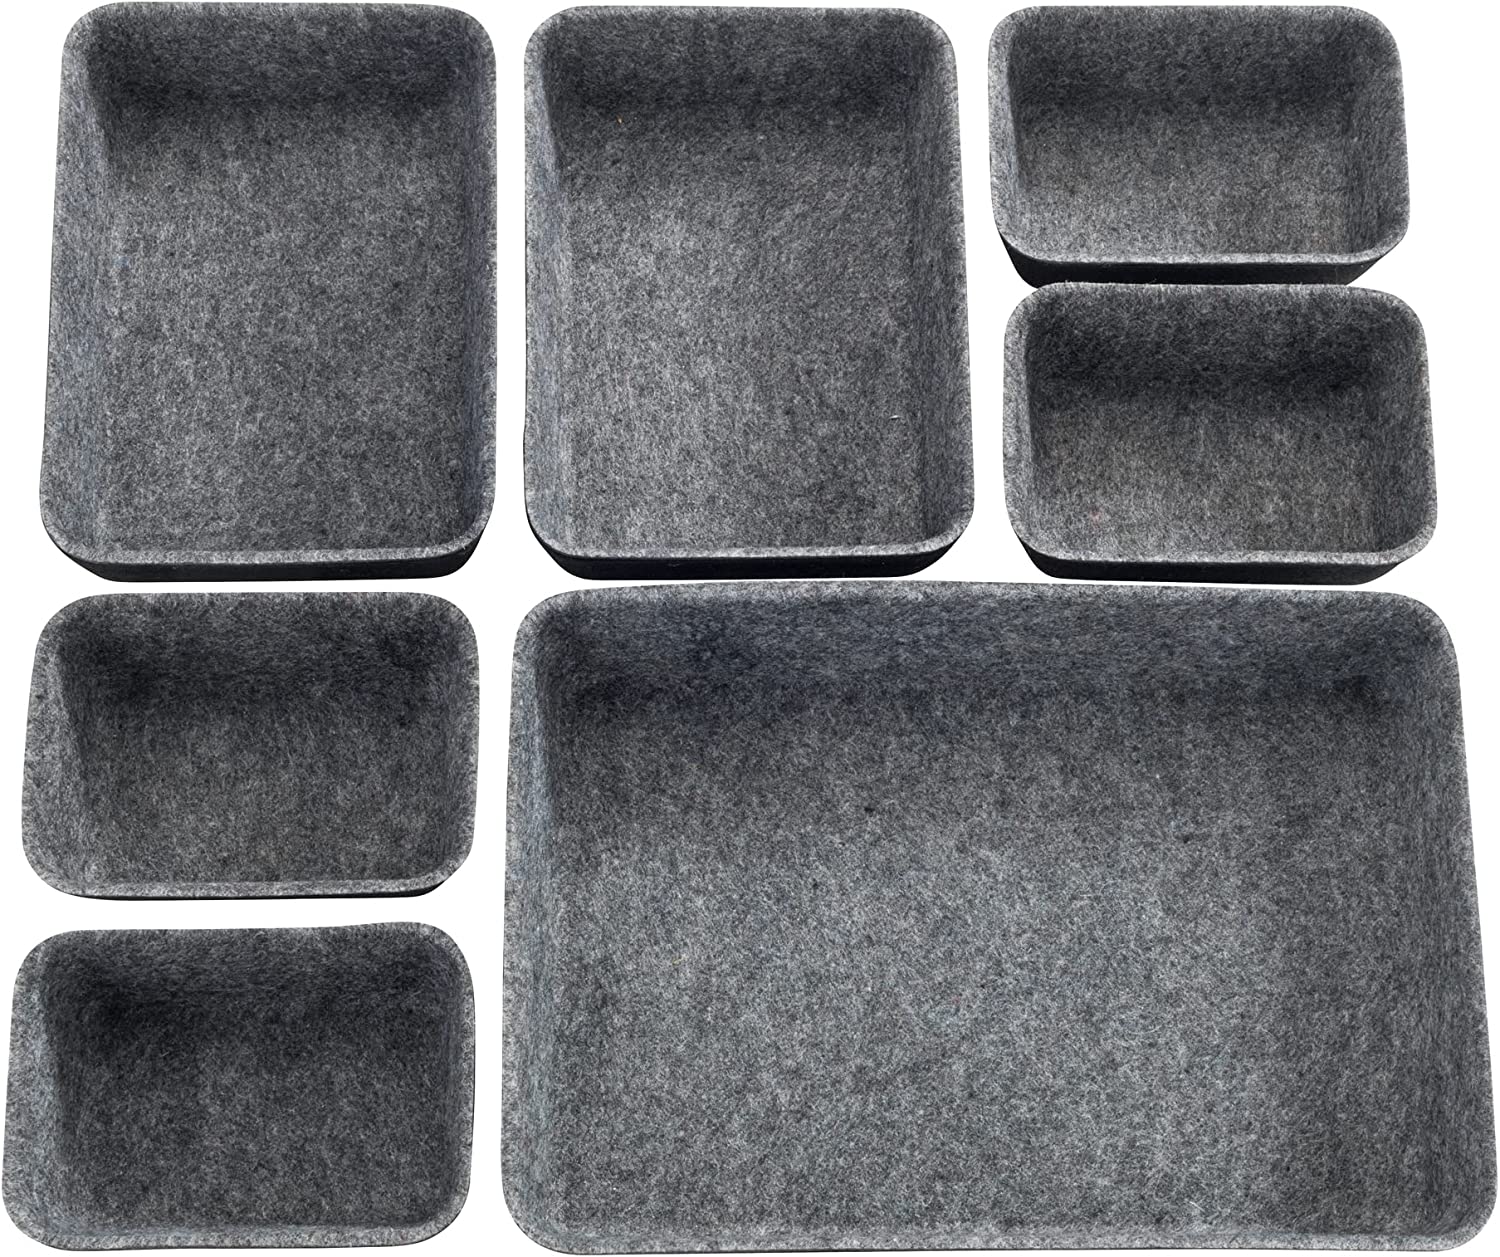 Schubladen Organizer Filz, 7-teiliger Aufbewahrungshelfer für Schubladen aus recyceltem Polyesterfilz, viele Kombinationen möglich durch Boxen in 3 verschiedenen Größen, Schwarz/Grau